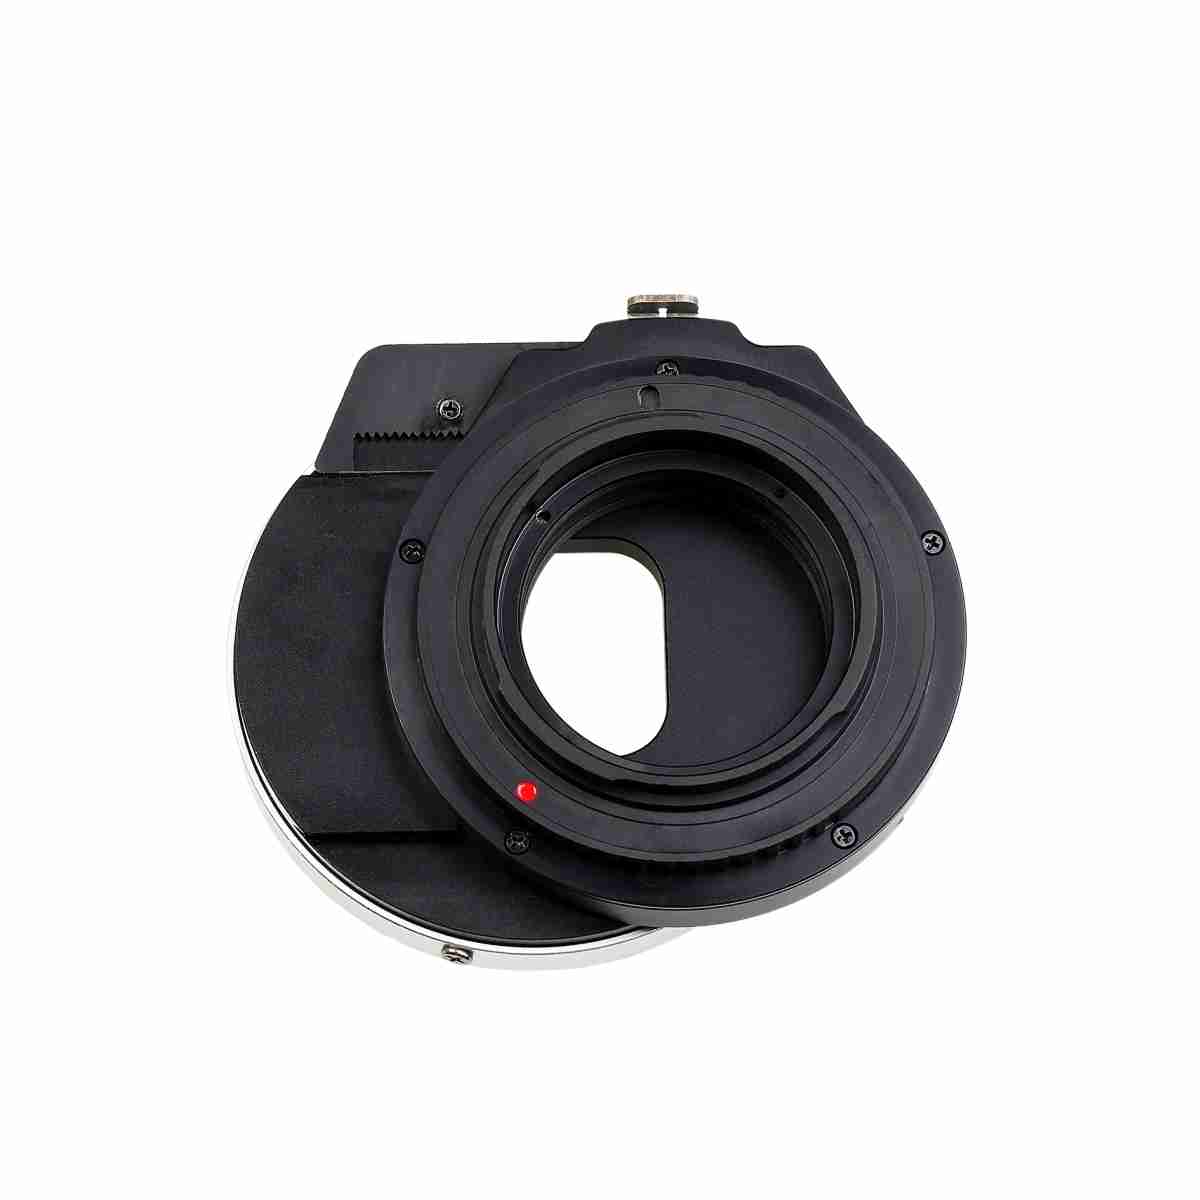 Kipon Shift Adapter Canon FD to Fuji X